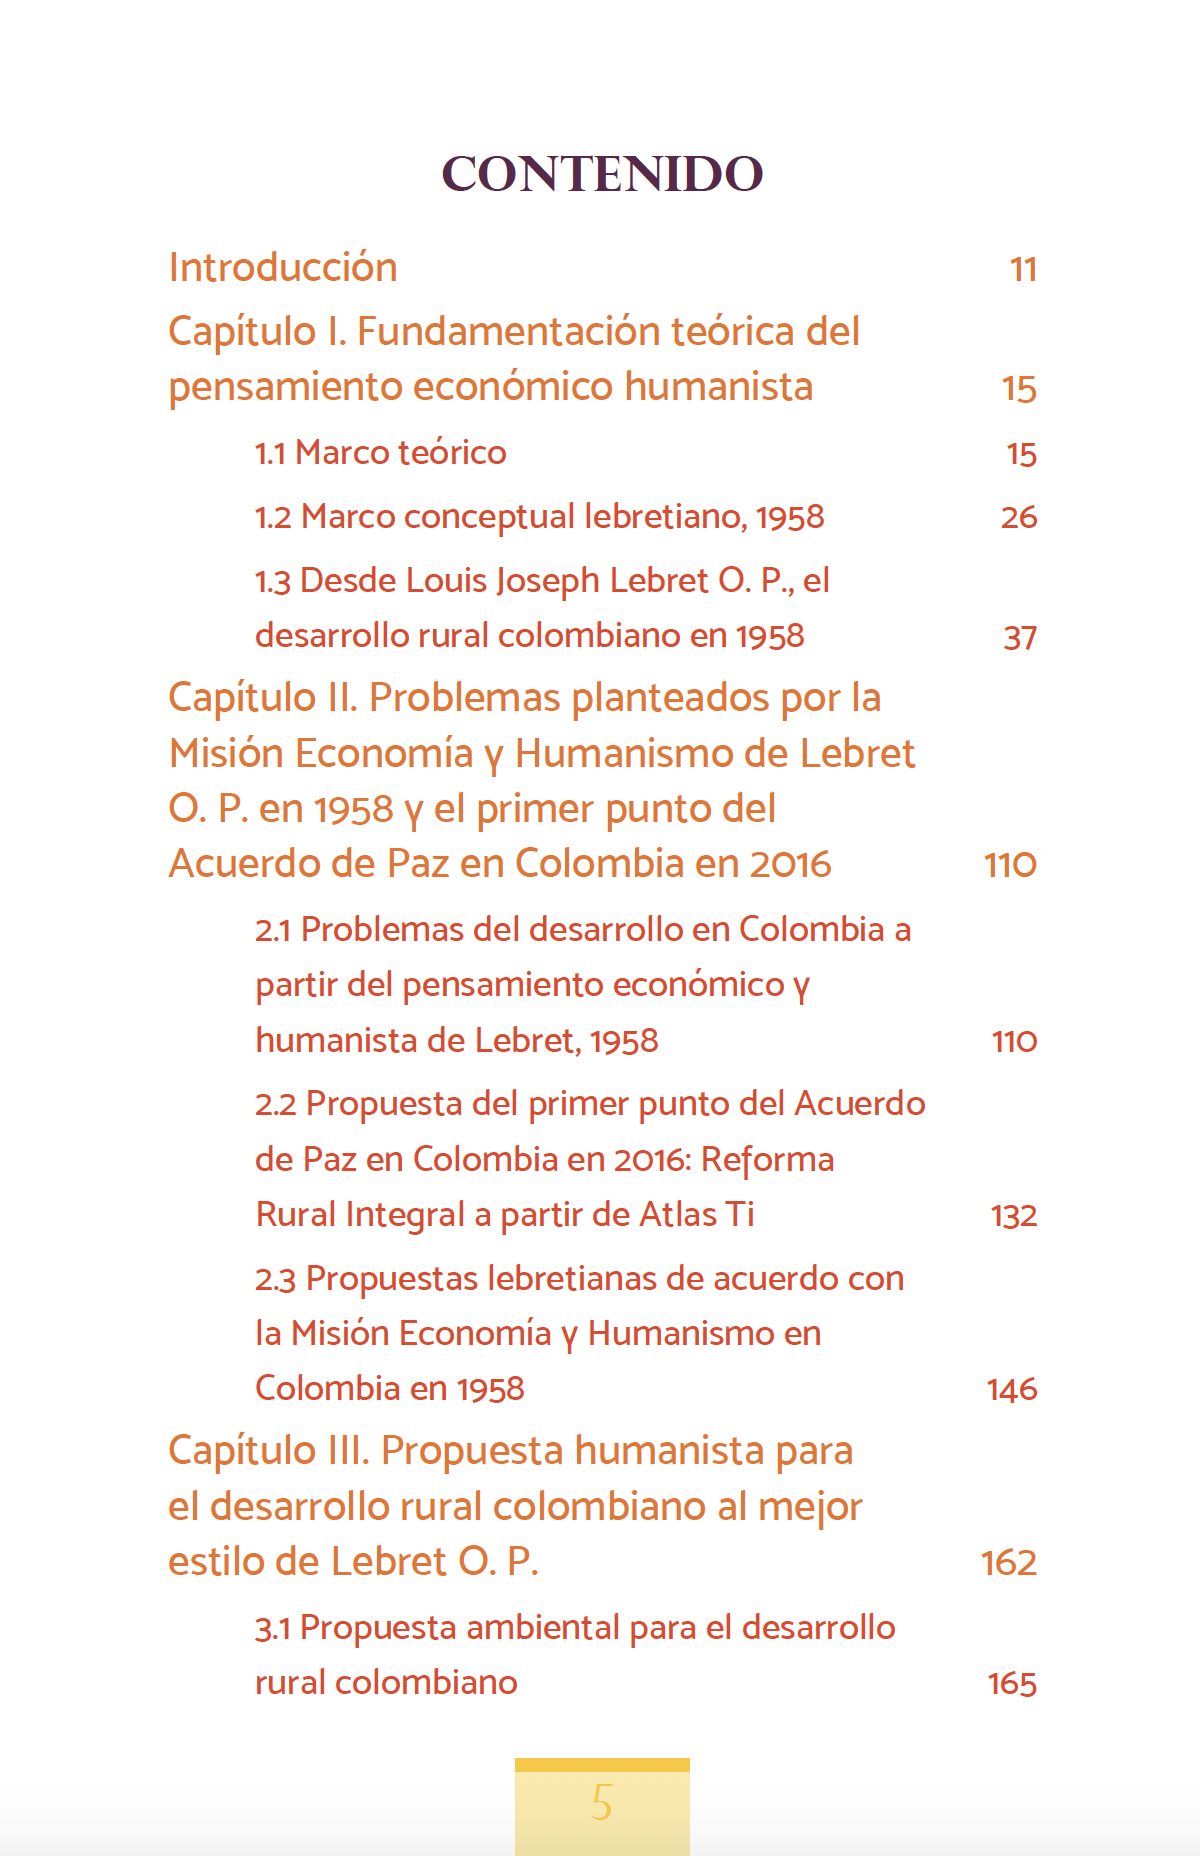 PENSAMIENTO ECONÓMICO HUMANISTA DE LEBRET O.P. EN EL ACUERDO DE PAZ EN COLOMBIA